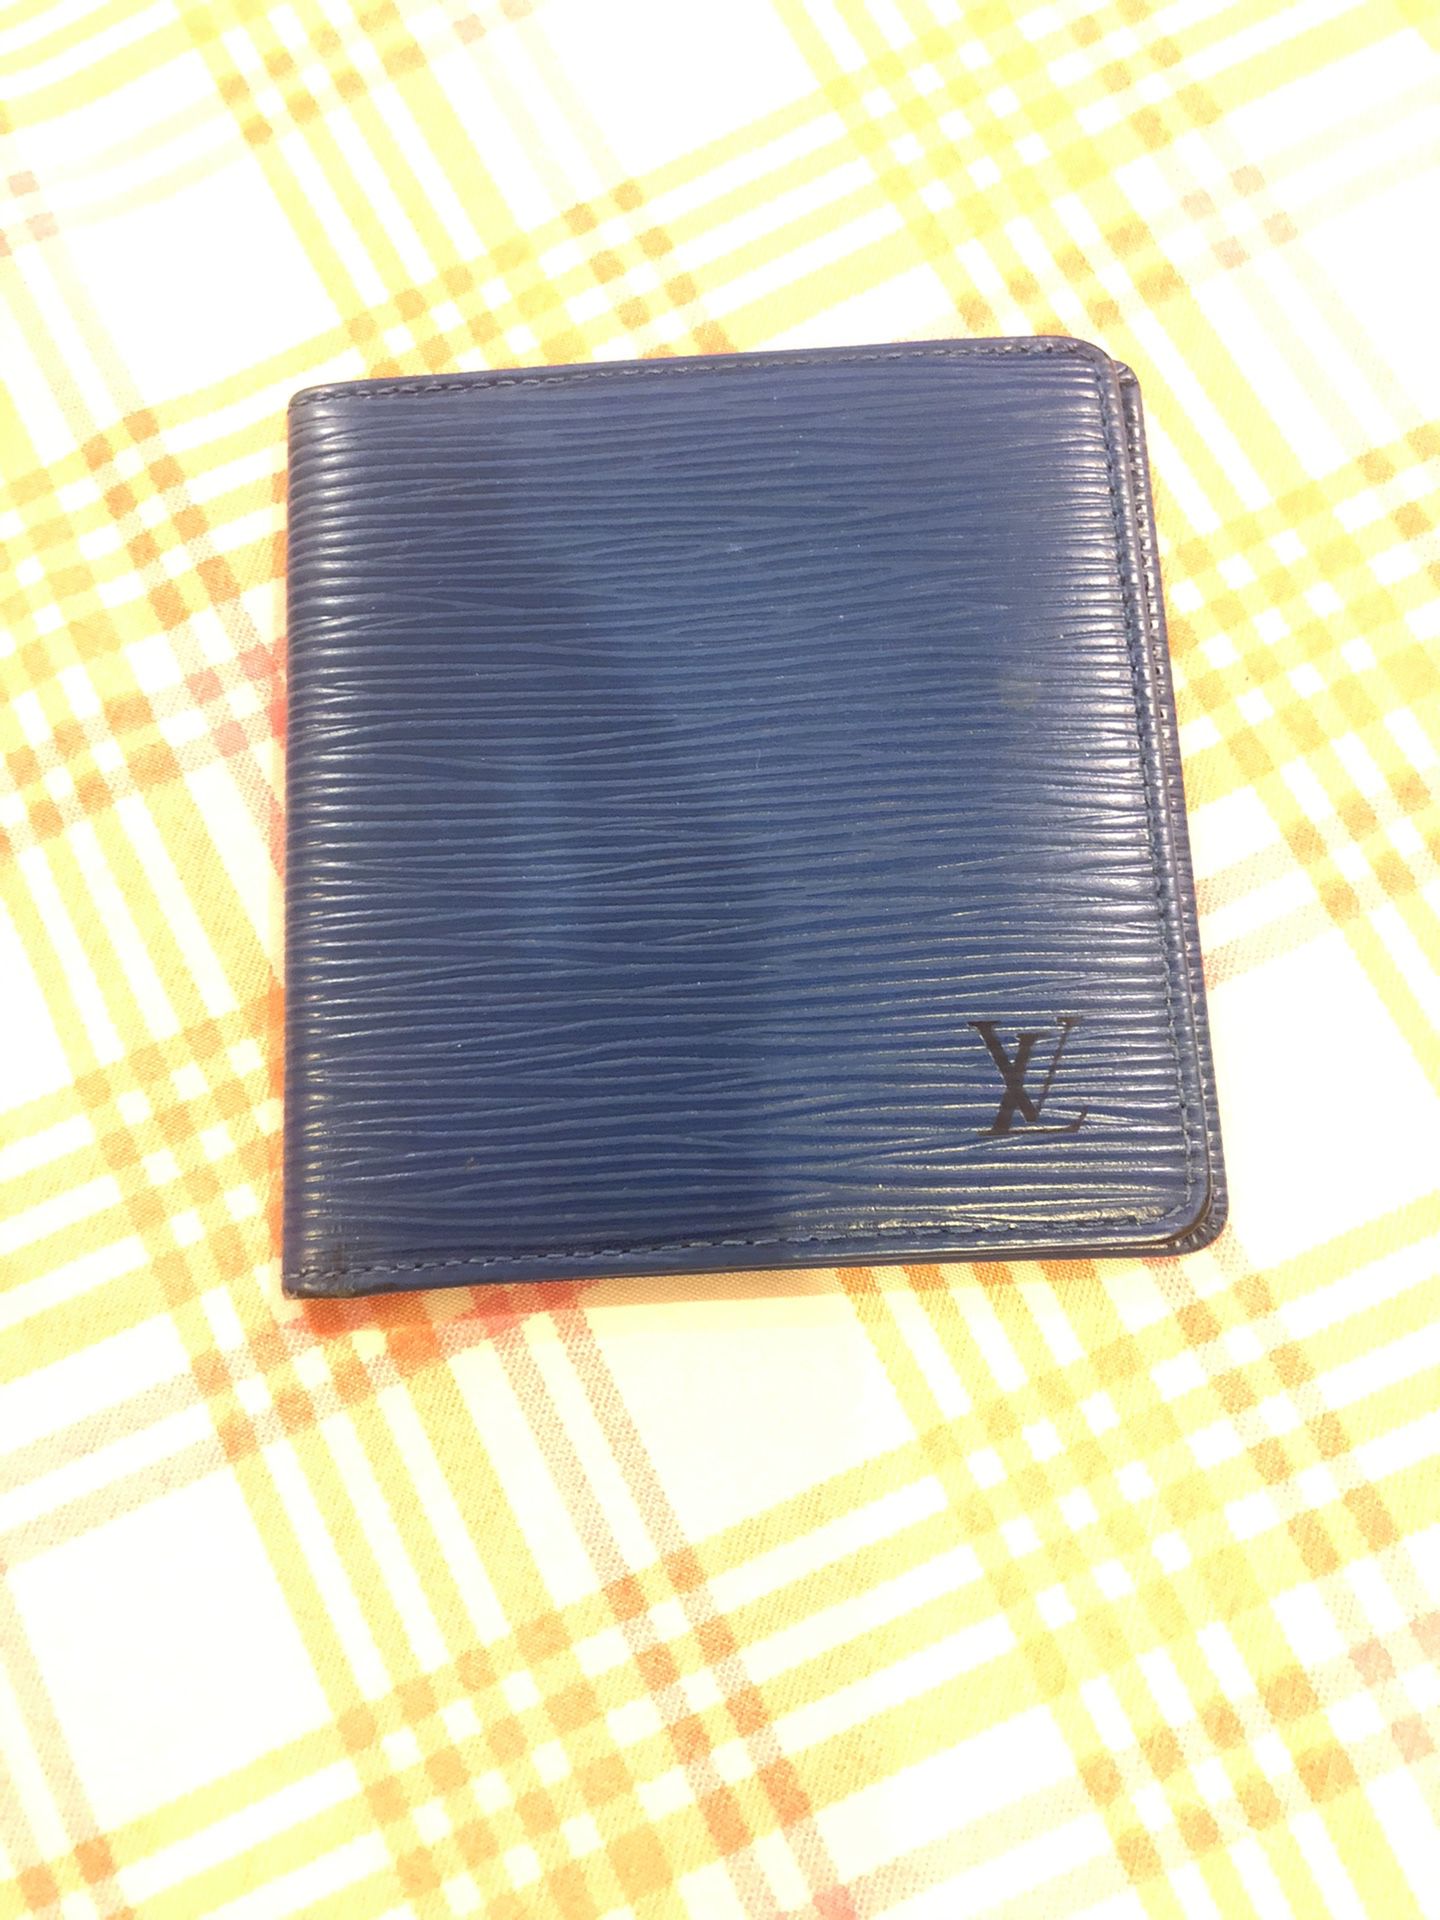 Epi leather LV wallet - 6 cards slots